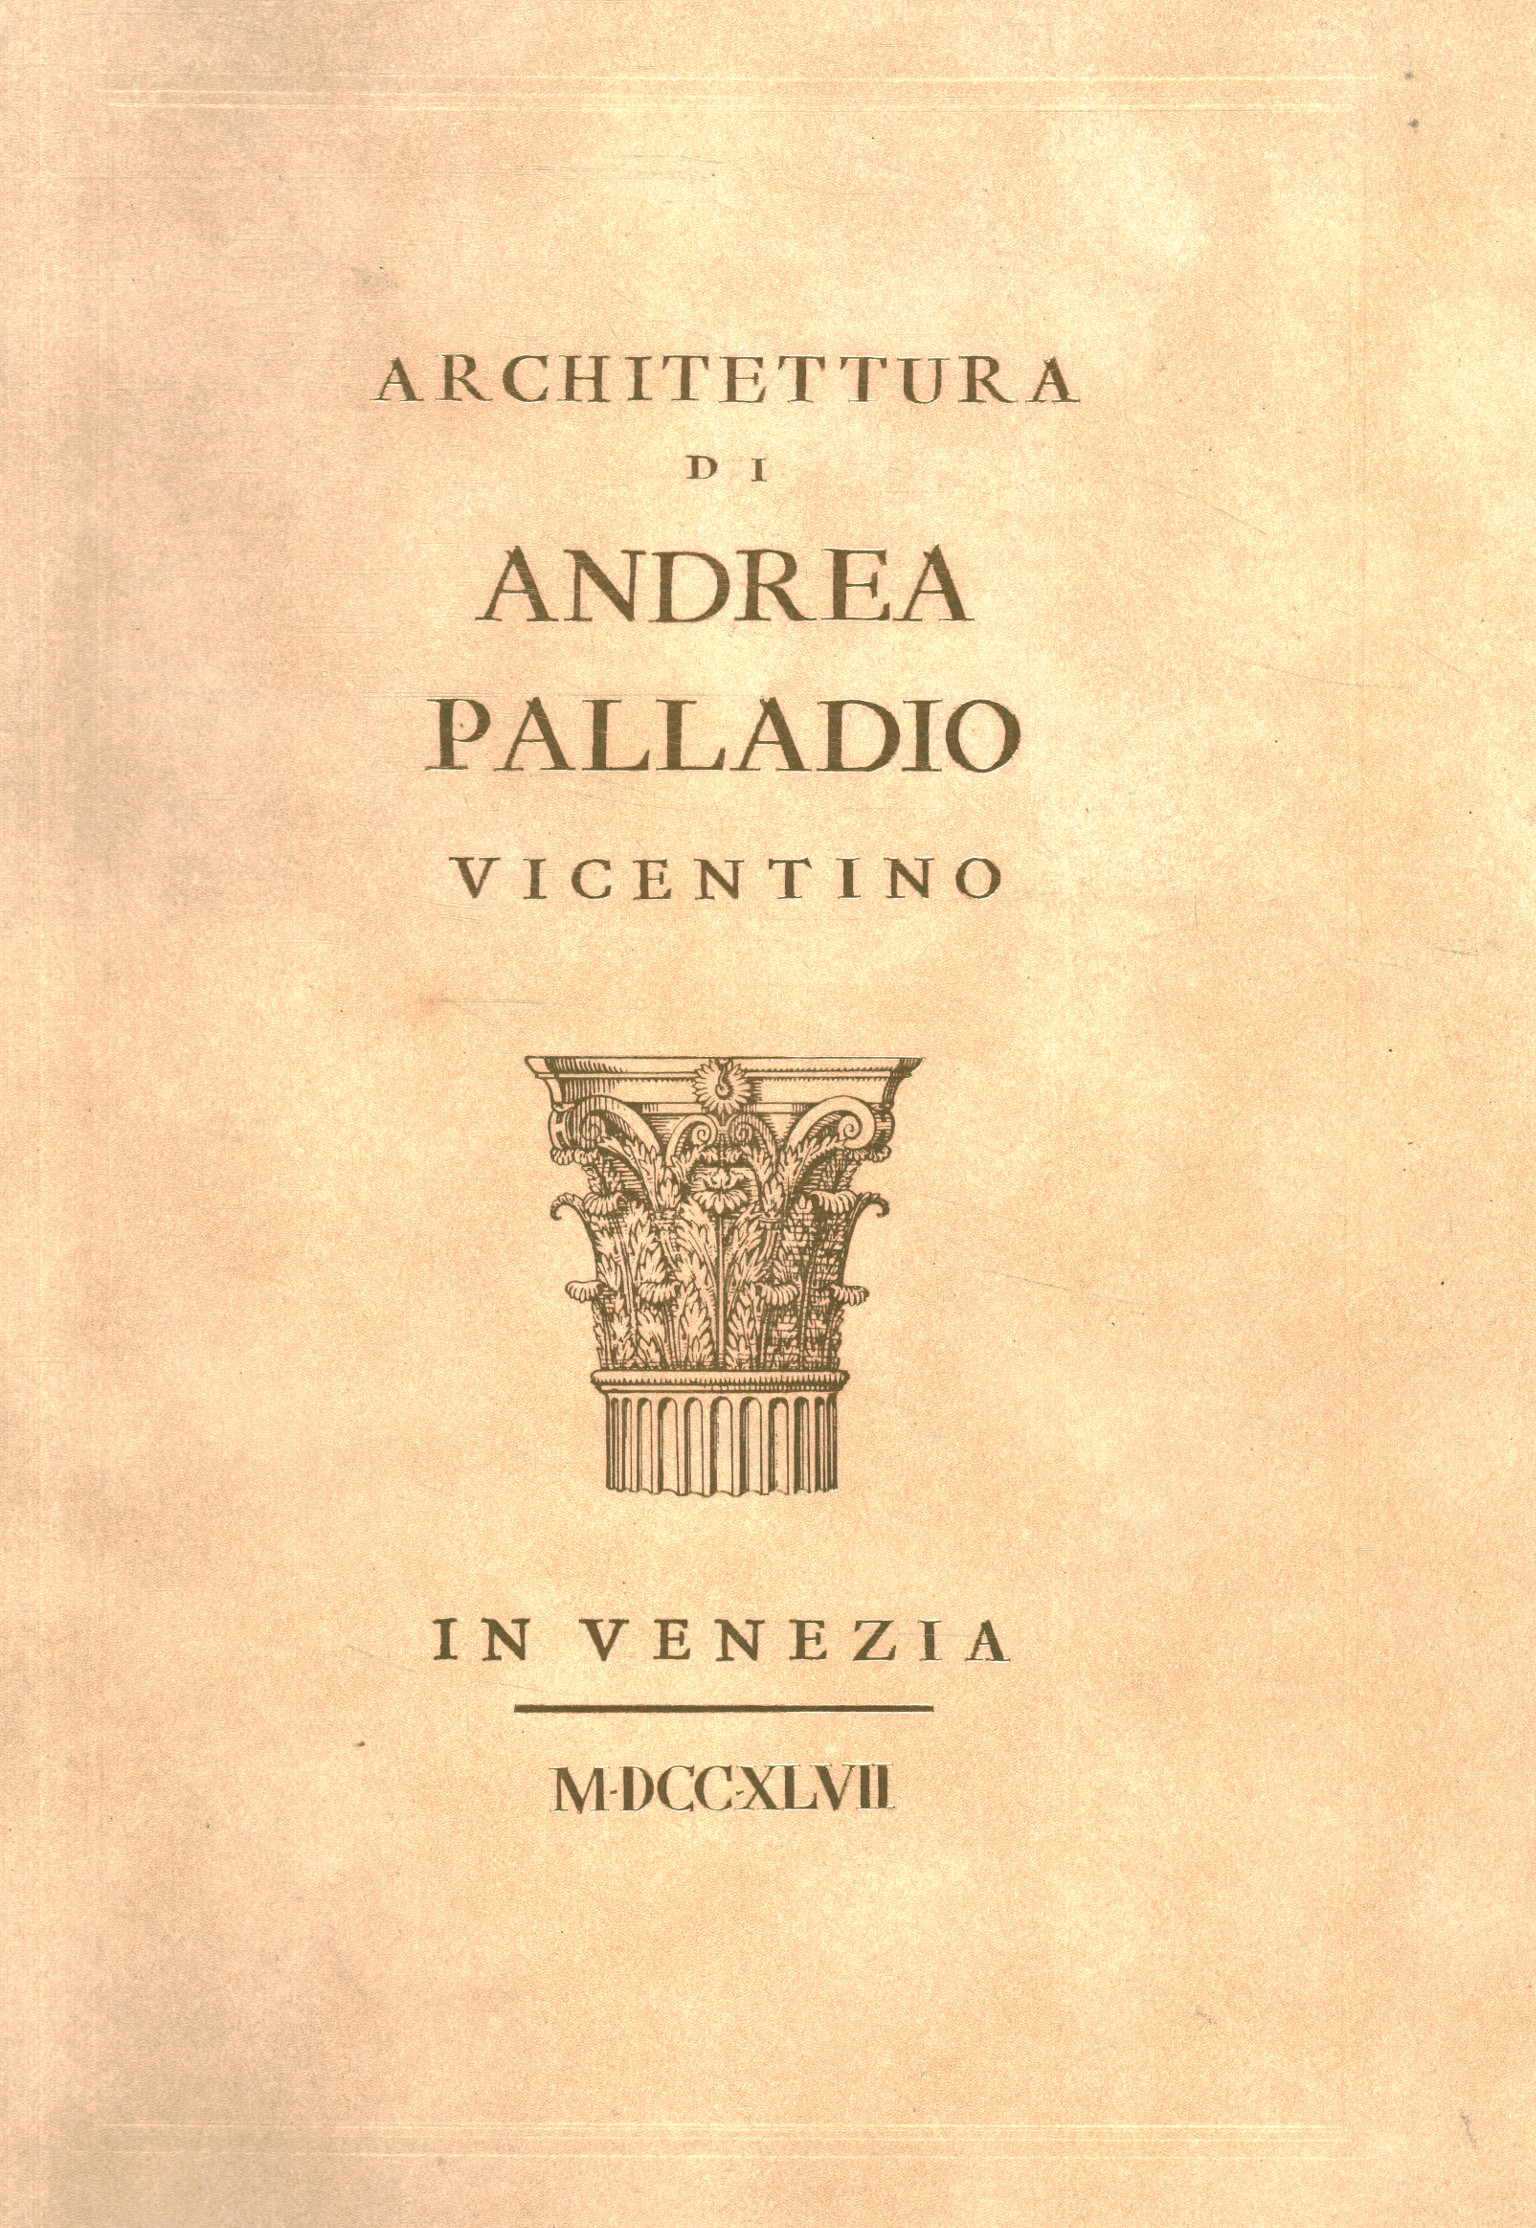 Arquitectura de Andrea Palladio de Vicenza%,Arquitectura de Andrea Palladio de Vicenza%,Arquitectura de Andrea Palladio de Vicenza%